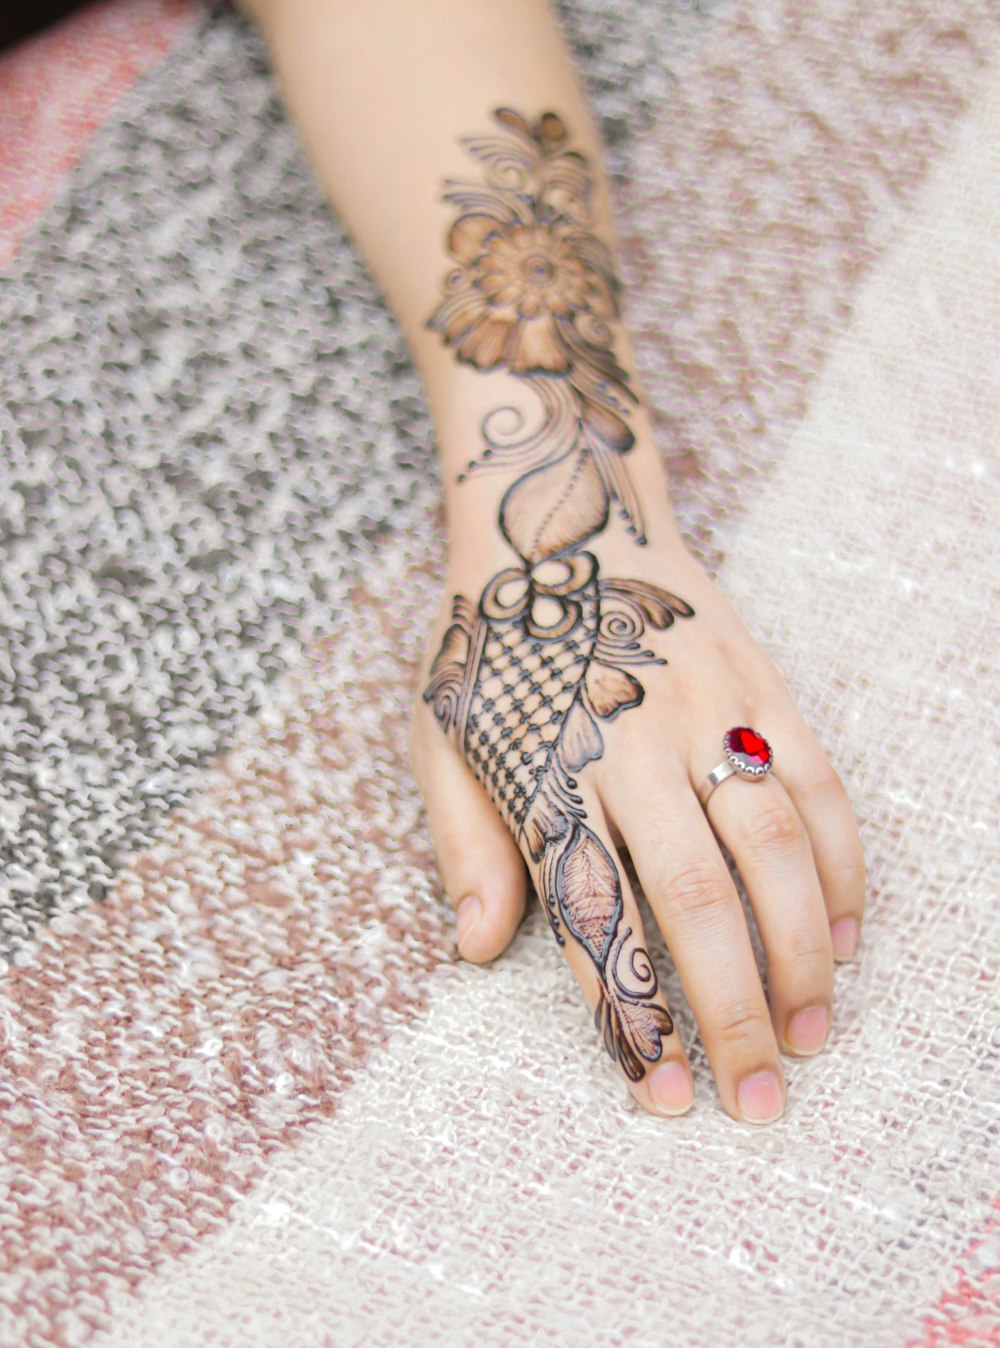 Persona con tatuaje de flores negras y rojas en la mano derecha